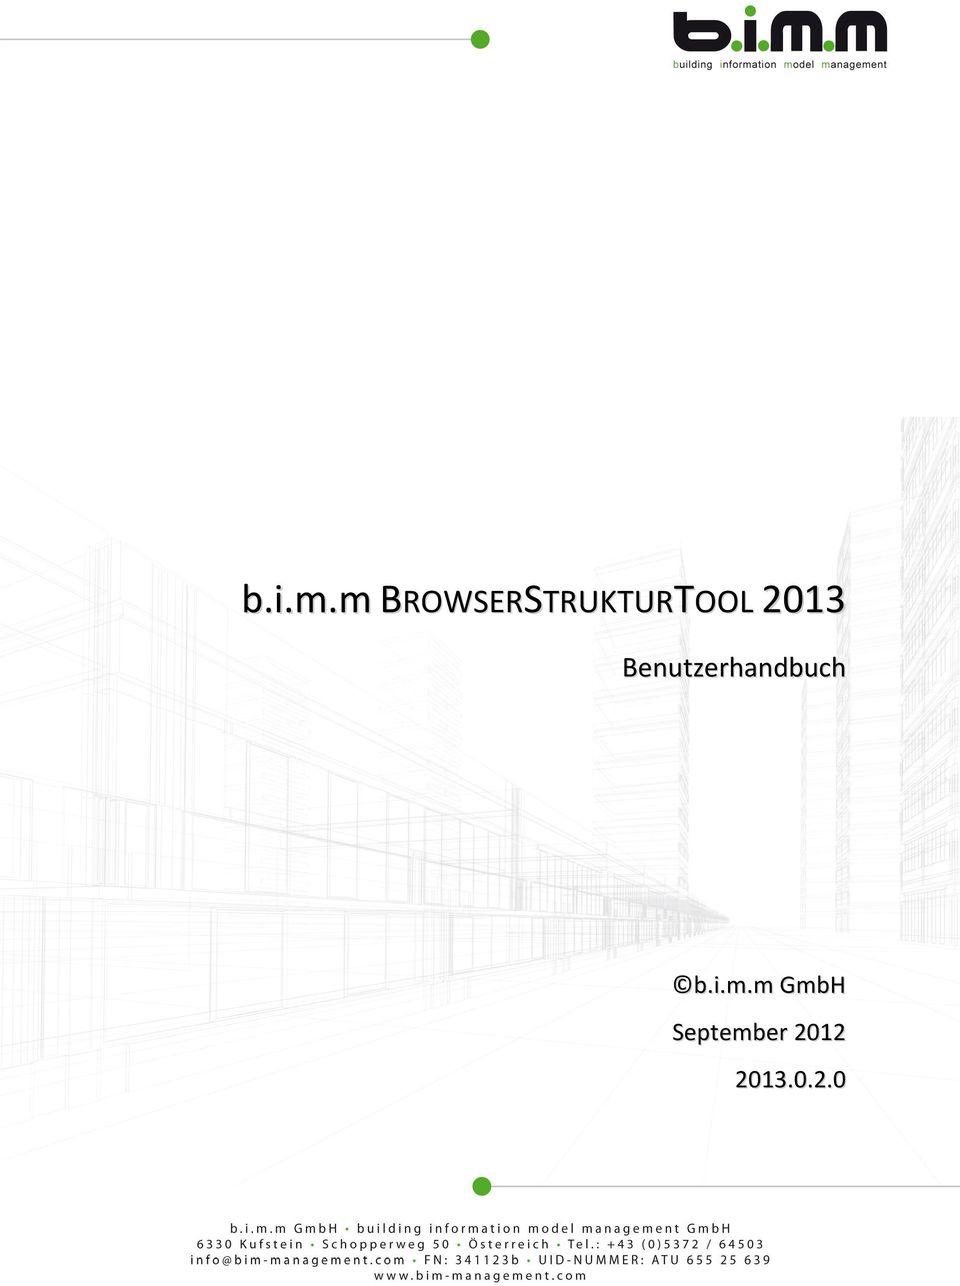 2013 Benutzerhandbuch